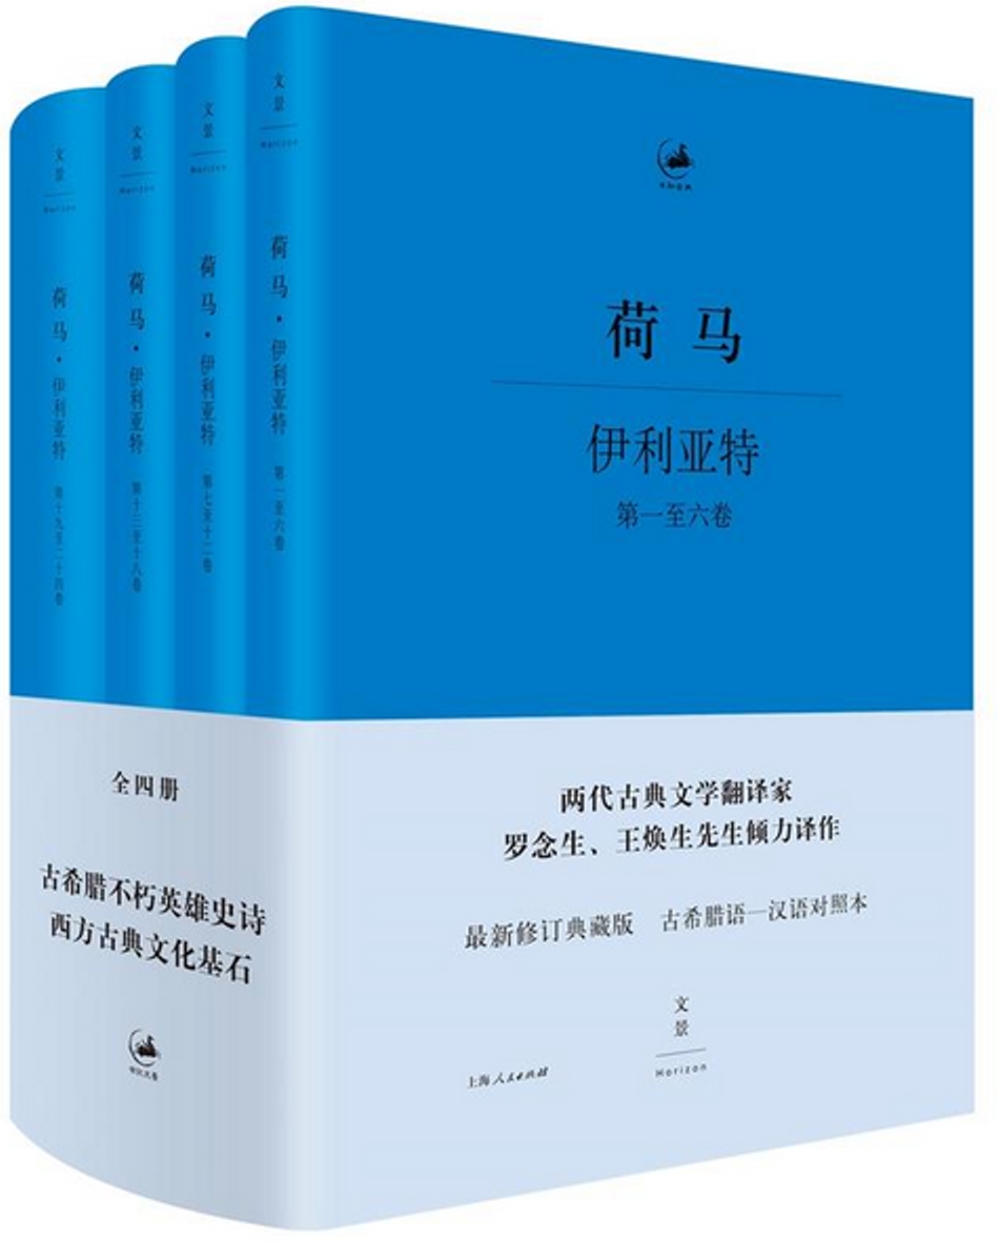 荷馬·伊利亞特(共4冊)：最新修訂典藏版古希臘語-漢語對照本